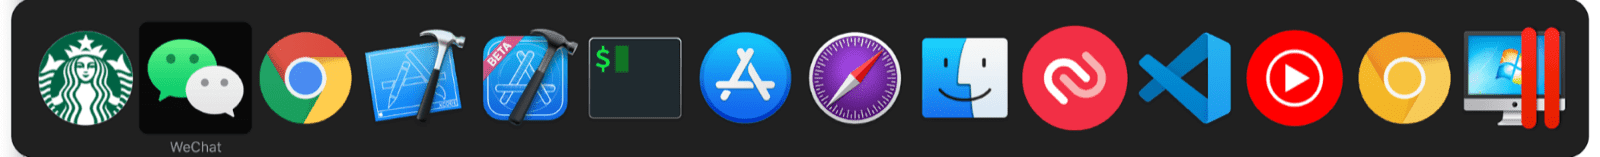 macOS पर मल्टीटास्क स्विचर में, सामान्य macOS ऐप्लिकेशन के साथ-साथ मिनी ऐप्लिकेशन भी शामिल होते हैं.